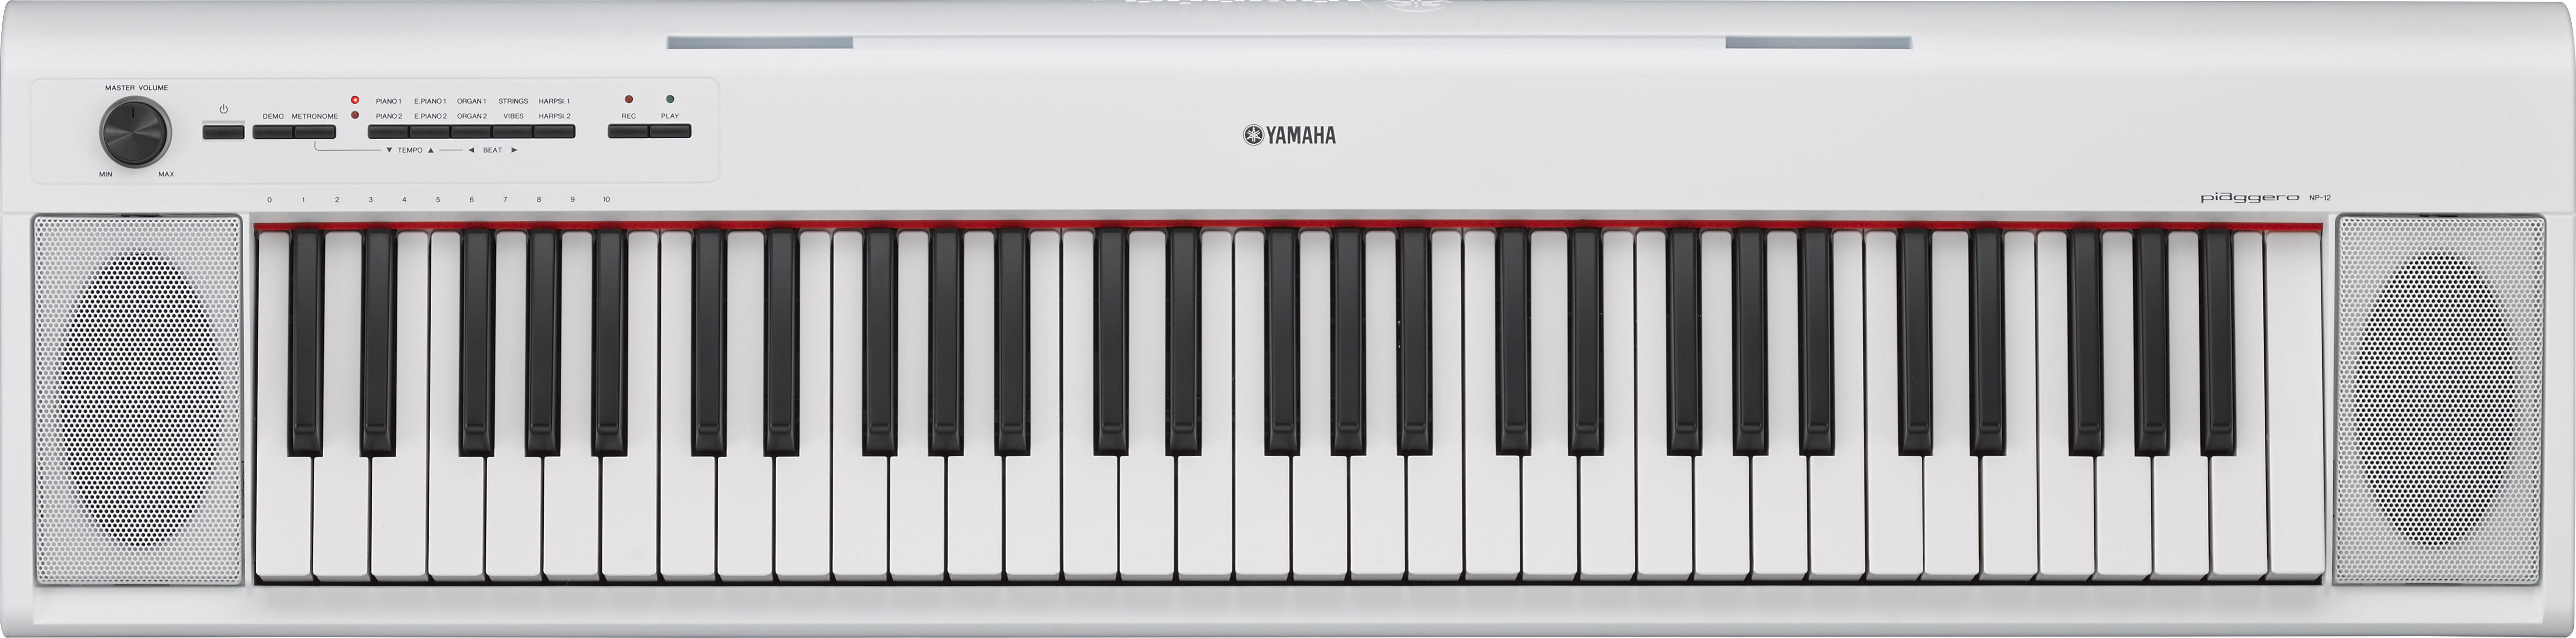 YAMAHA NP-12 PIAGGERO E-Piano/Keyboard WH Tragbares